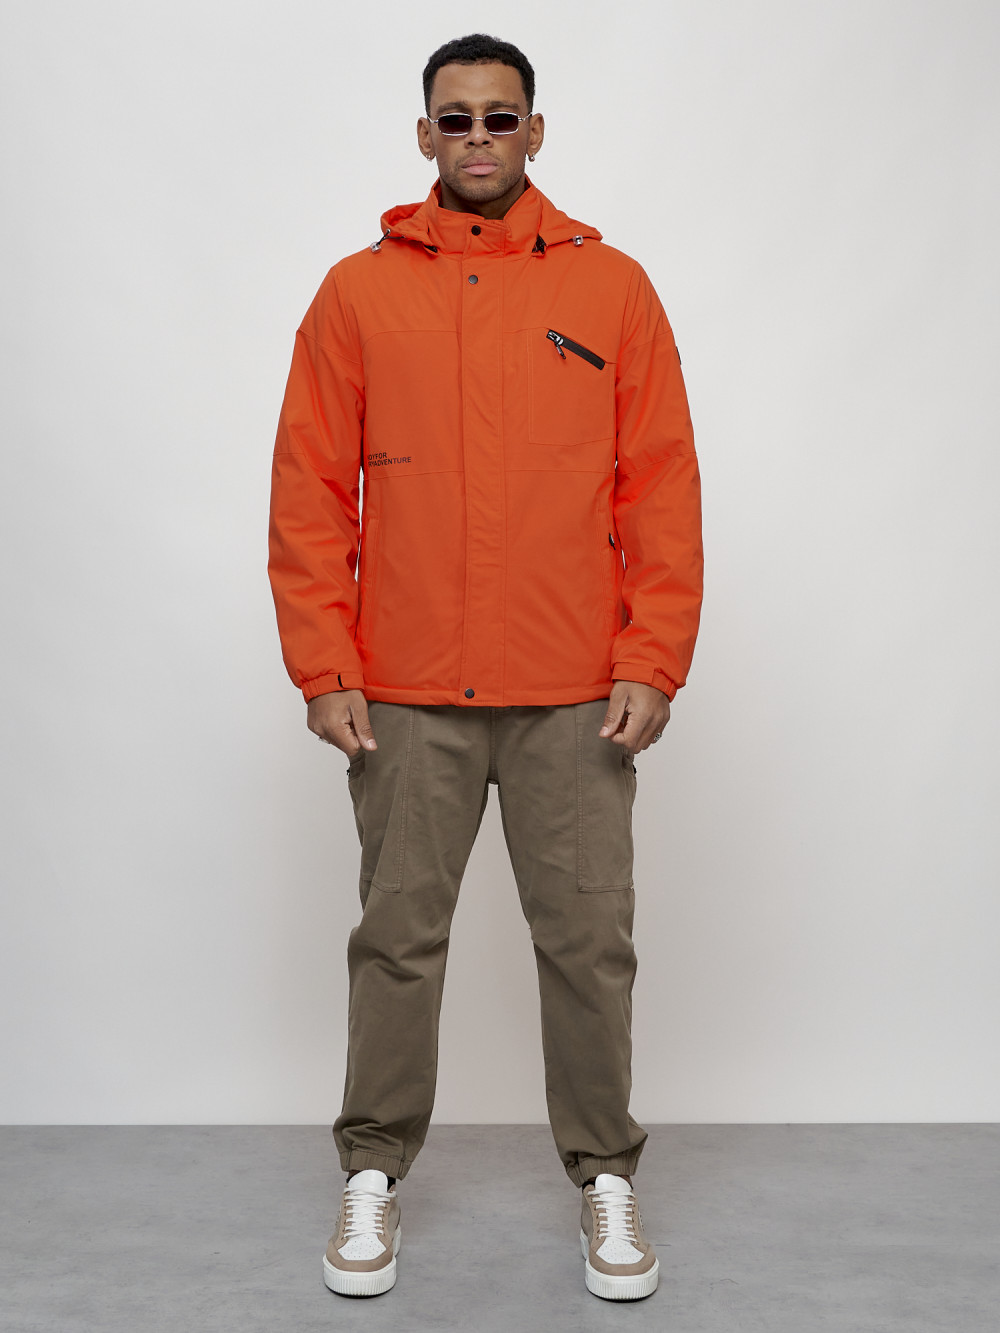 Купить оптом Куртка спортивная мужская весенняя с капюшоном оранжевого цвета 88021O в Екатеринбурге